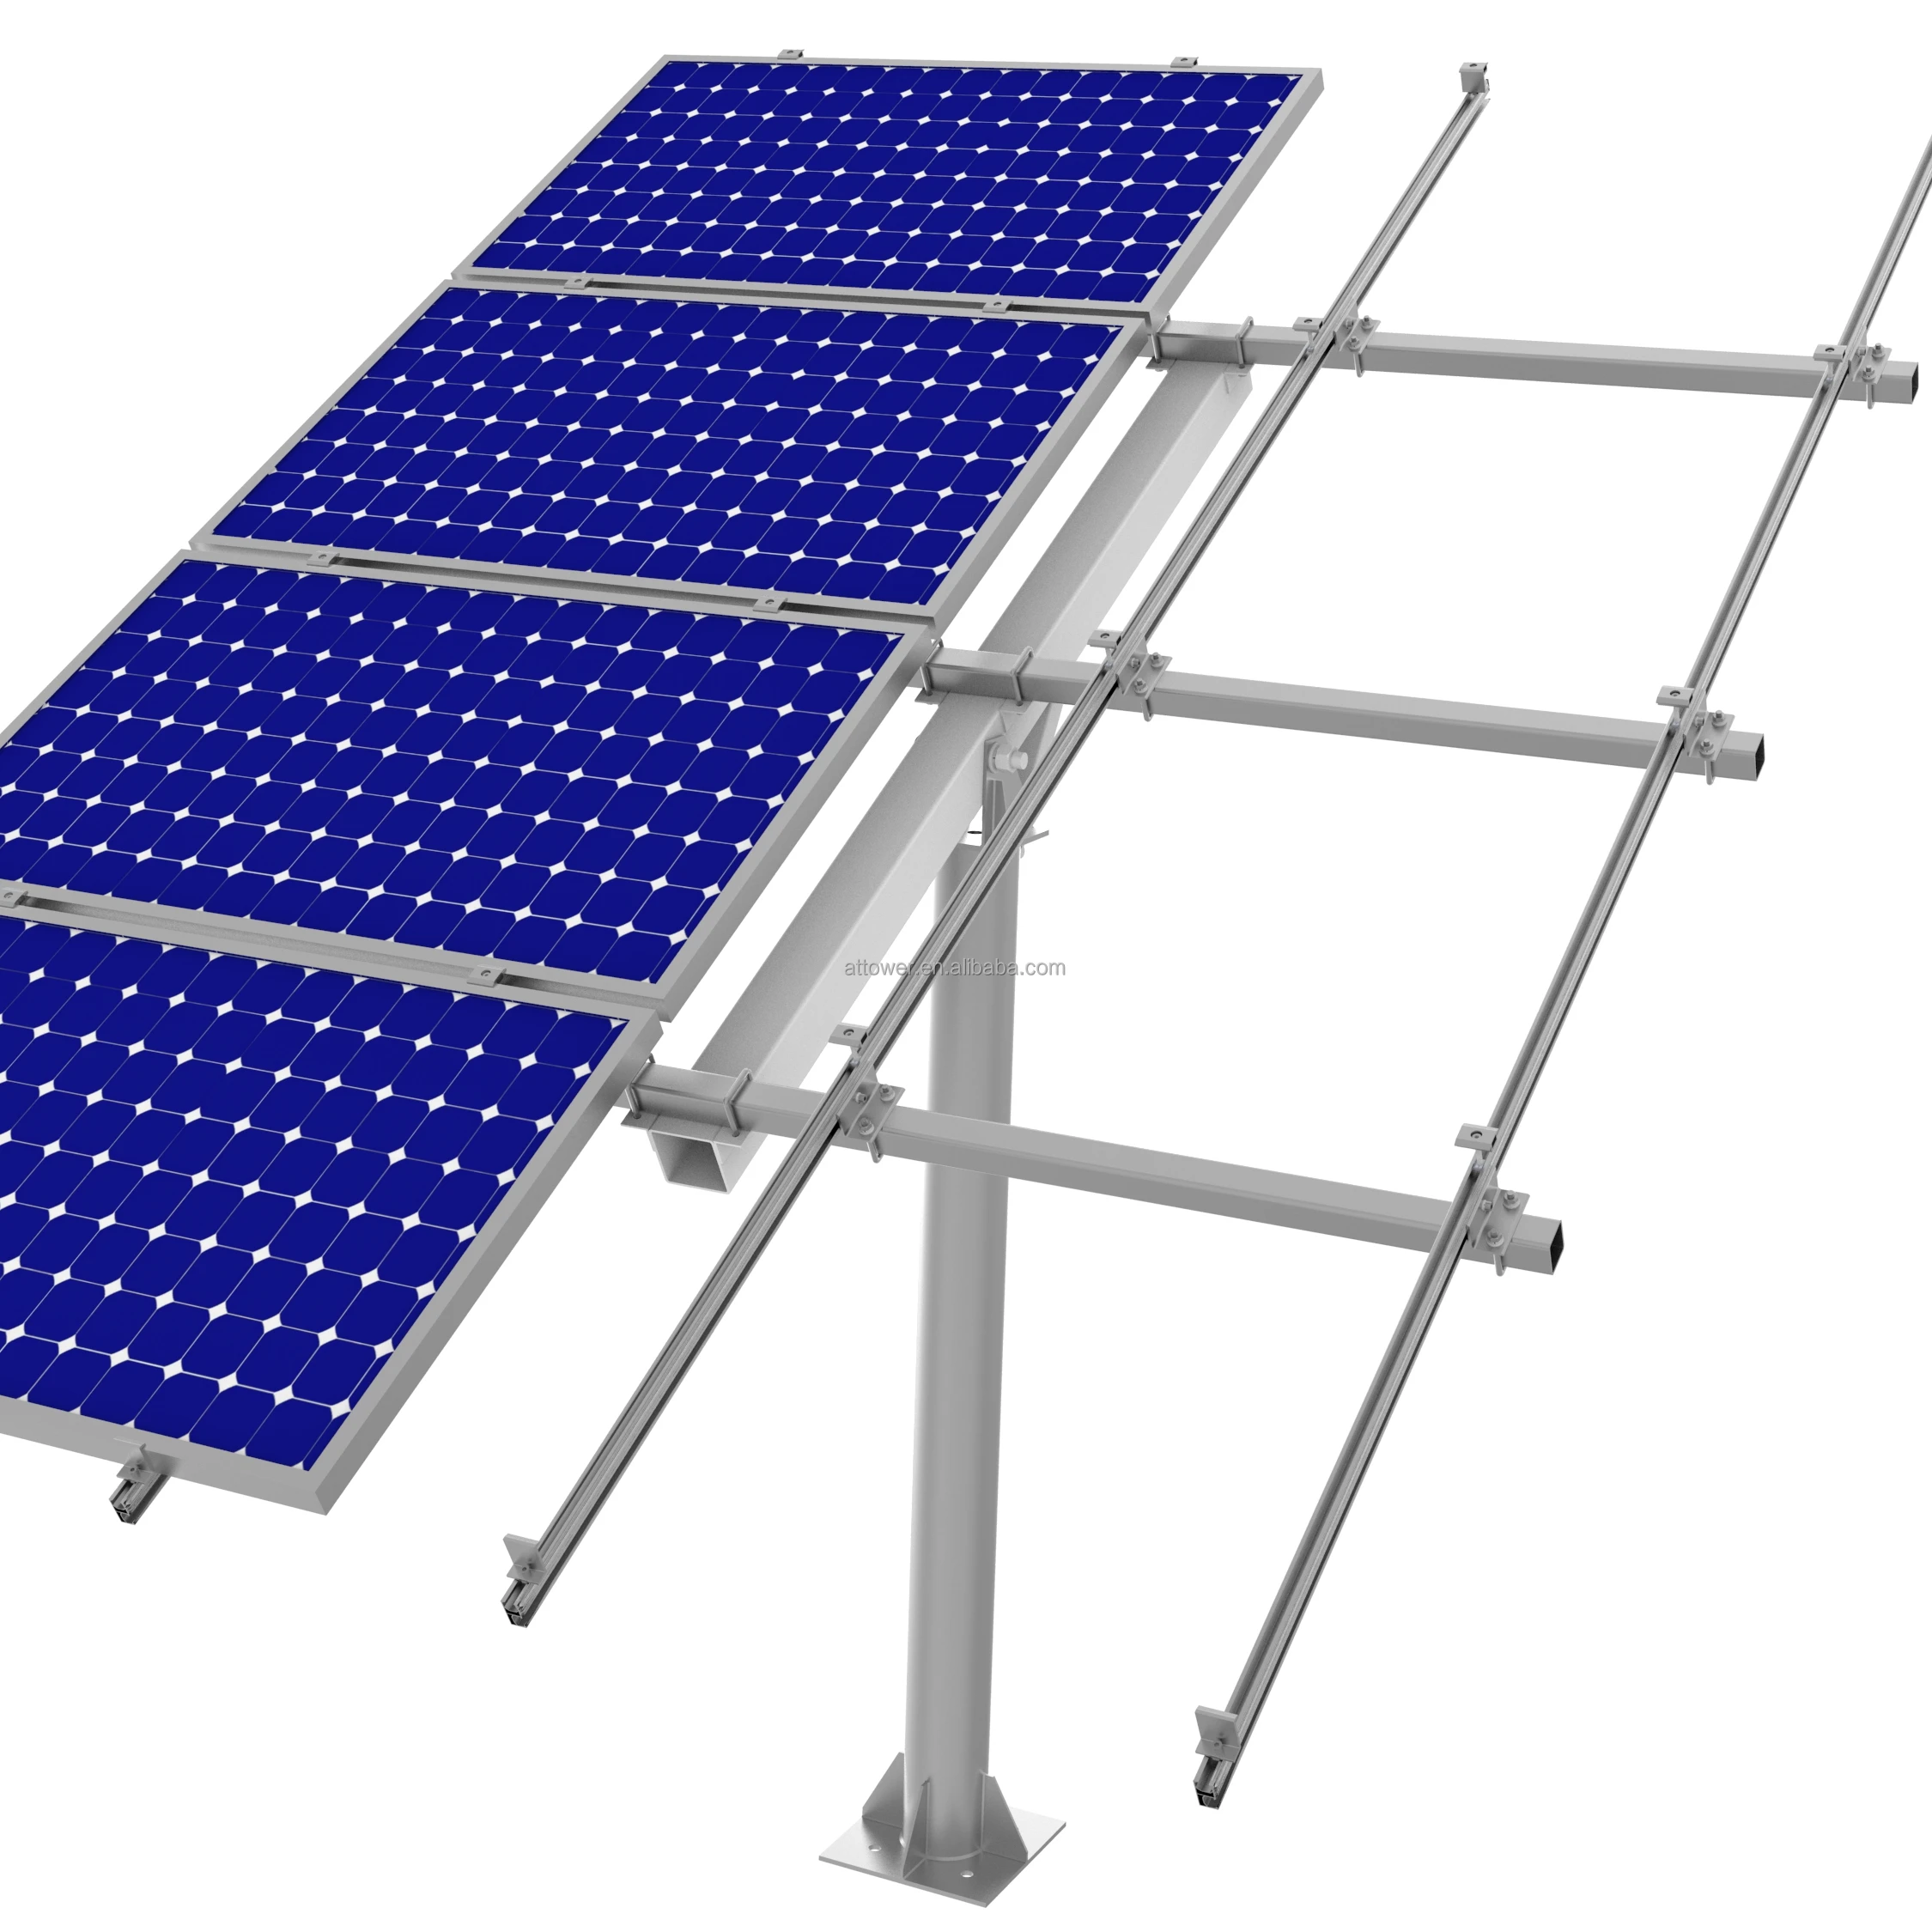 IPV Ground Mounting Aluminiyam Railing Solar Panel